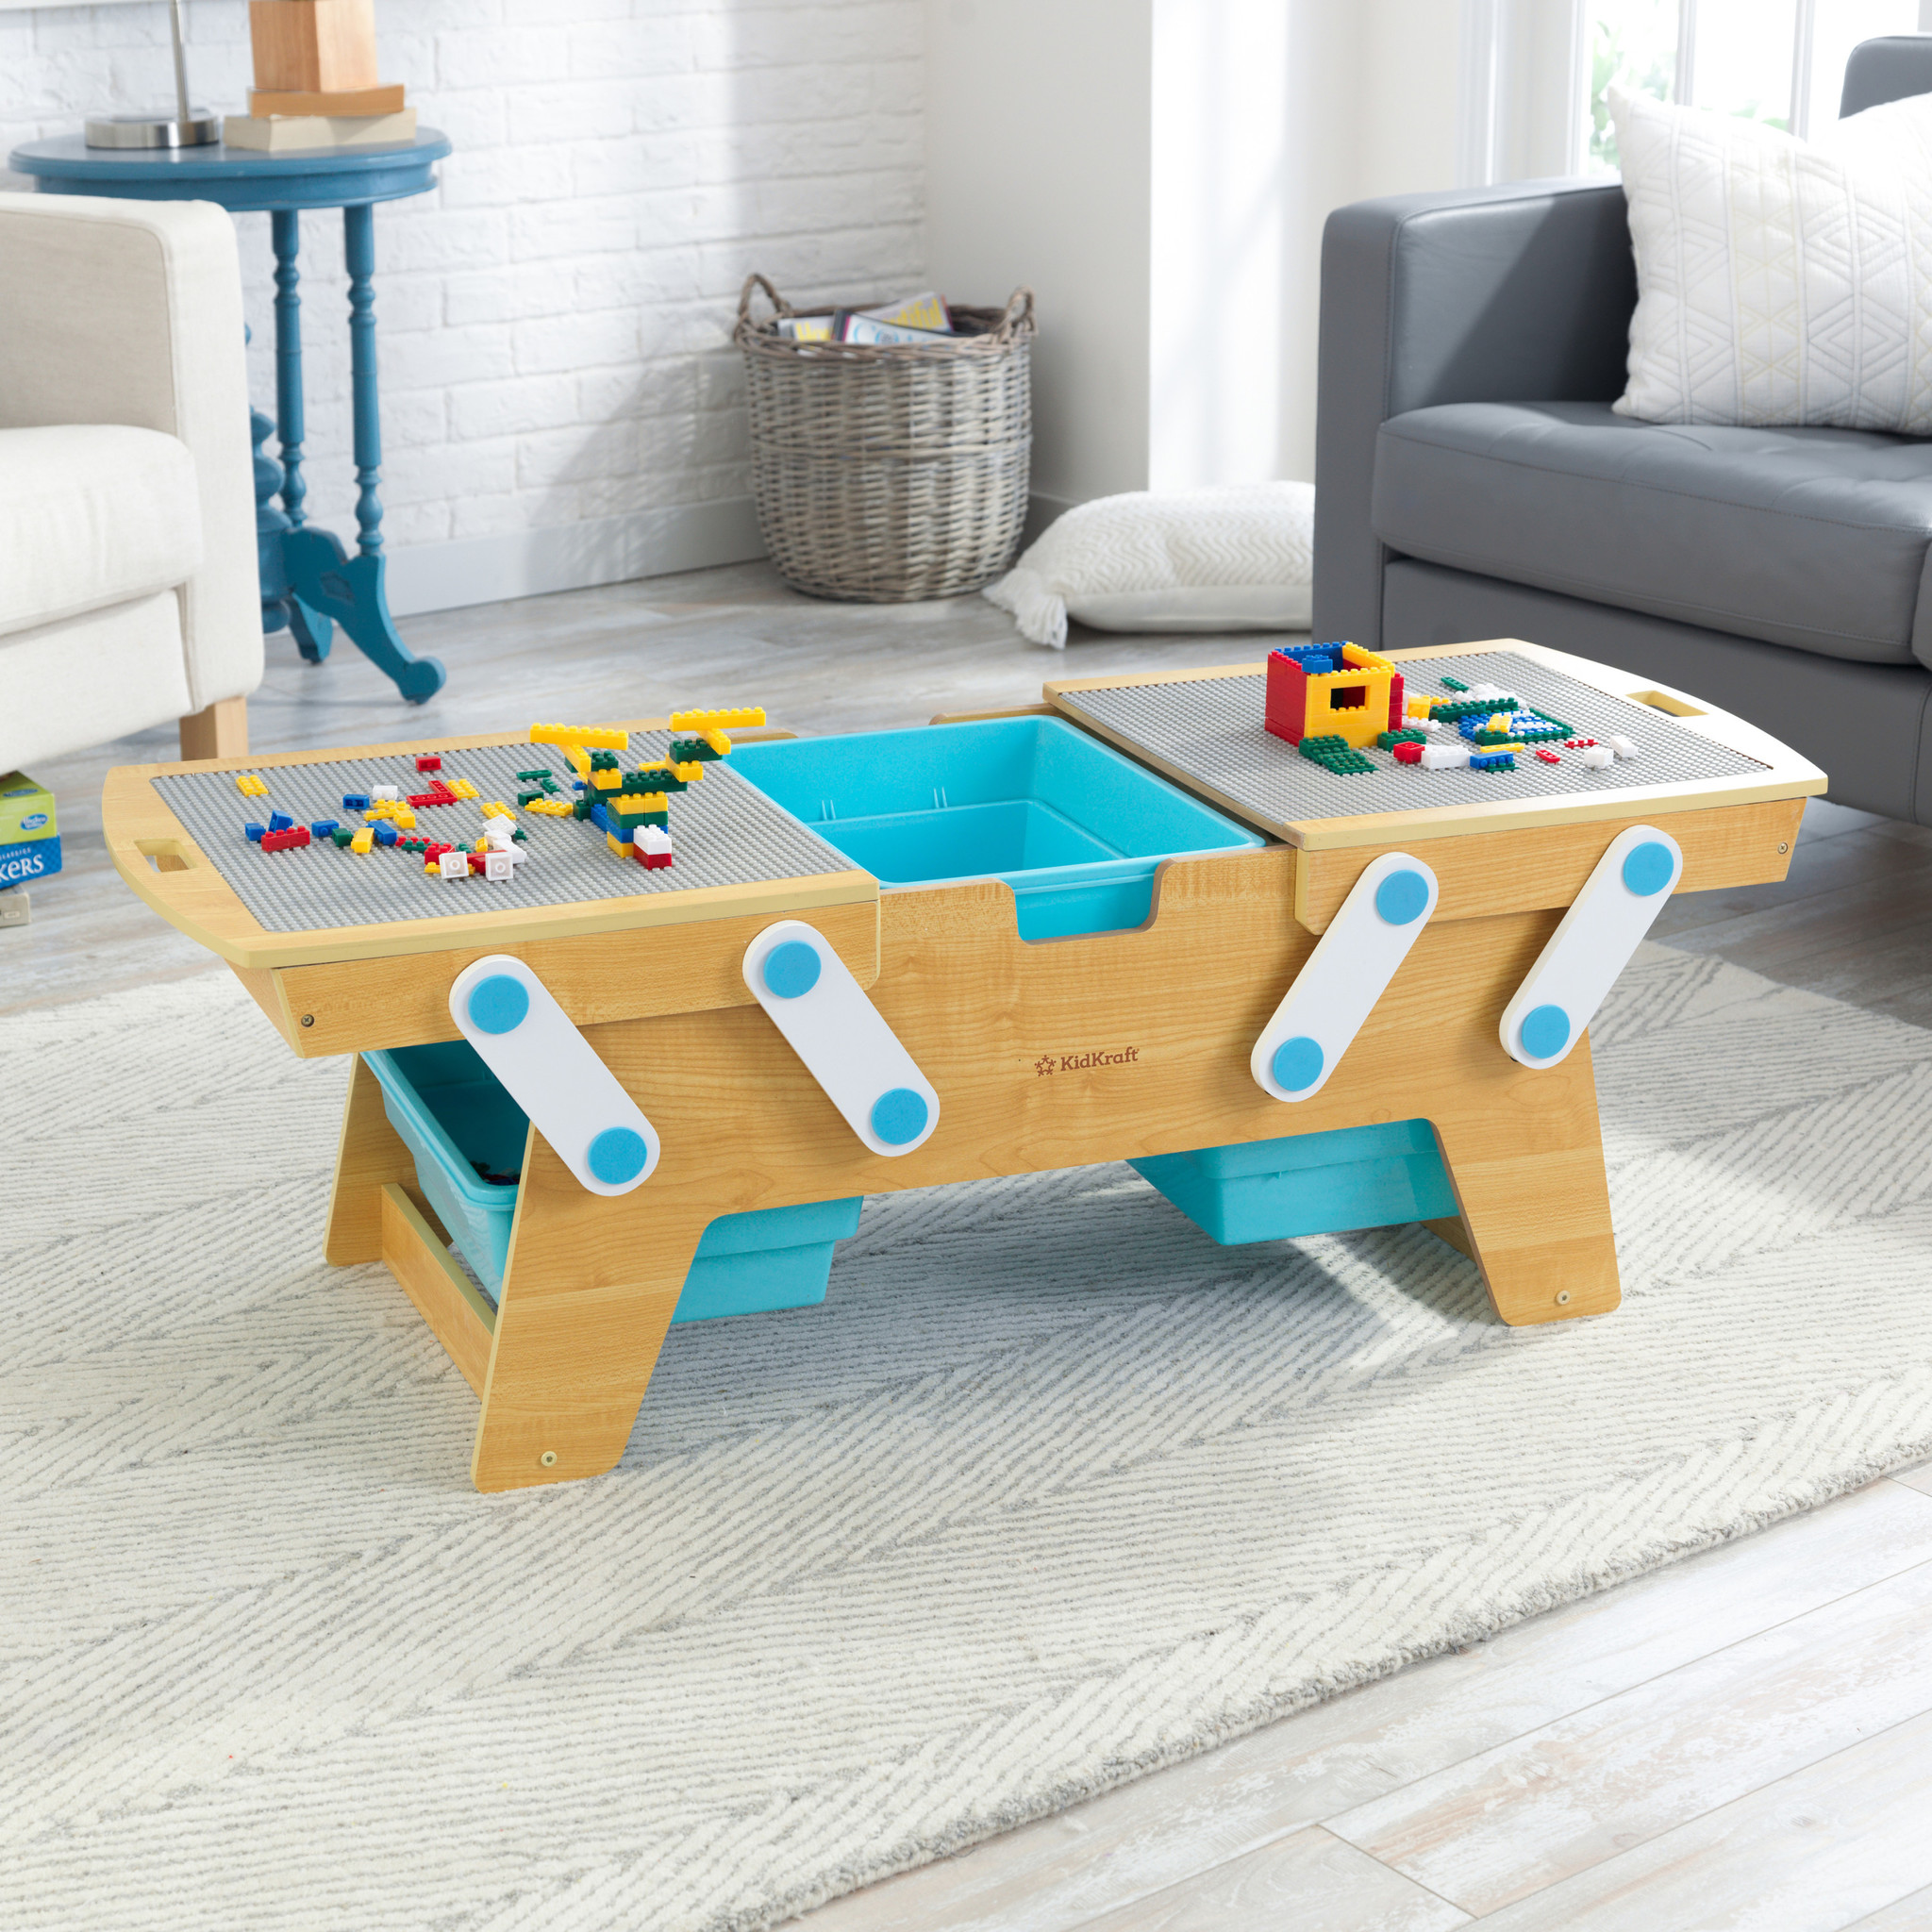 Table de construction - table de jeu - adaptée pour Lego